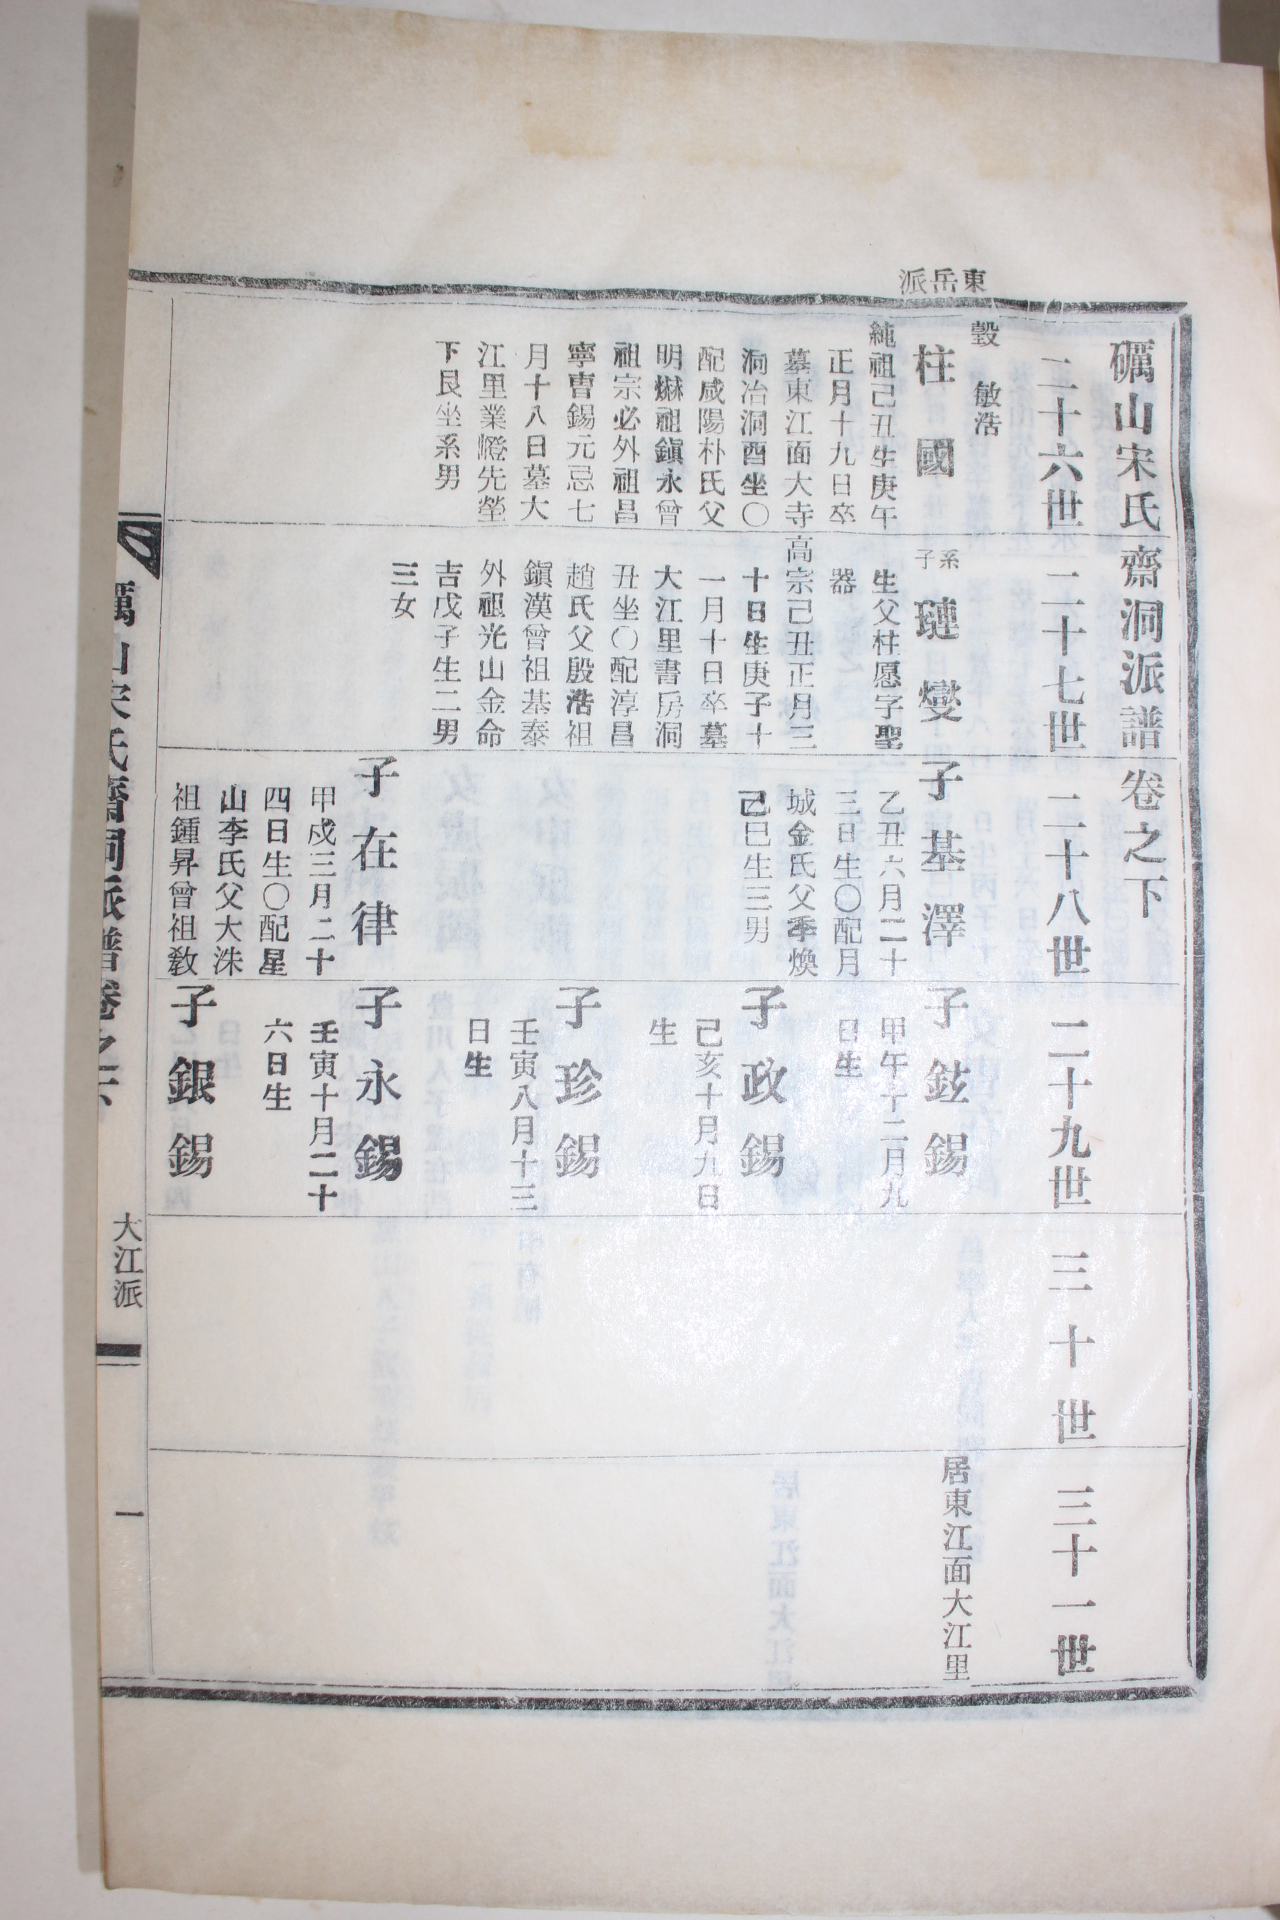 1967년(丁未) 연활자본 여산송씨재동파보(礪山宋氏齋洞派譜)상하 2책완질